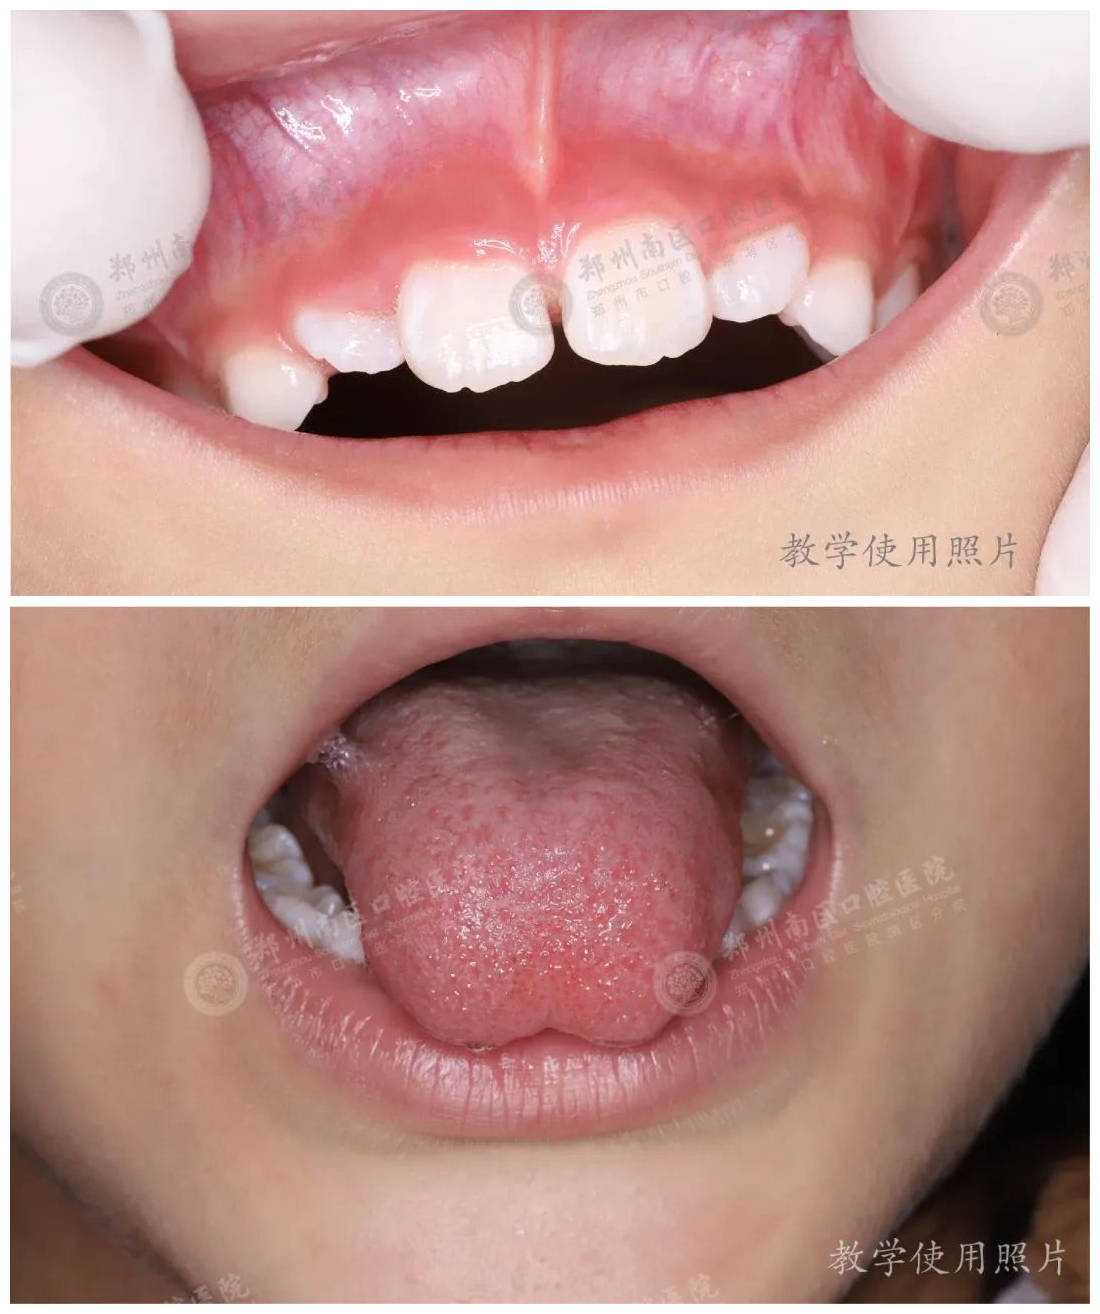 孩子门牙缝隙大,说话发音不清,可能是唇,舌系带惹的祸